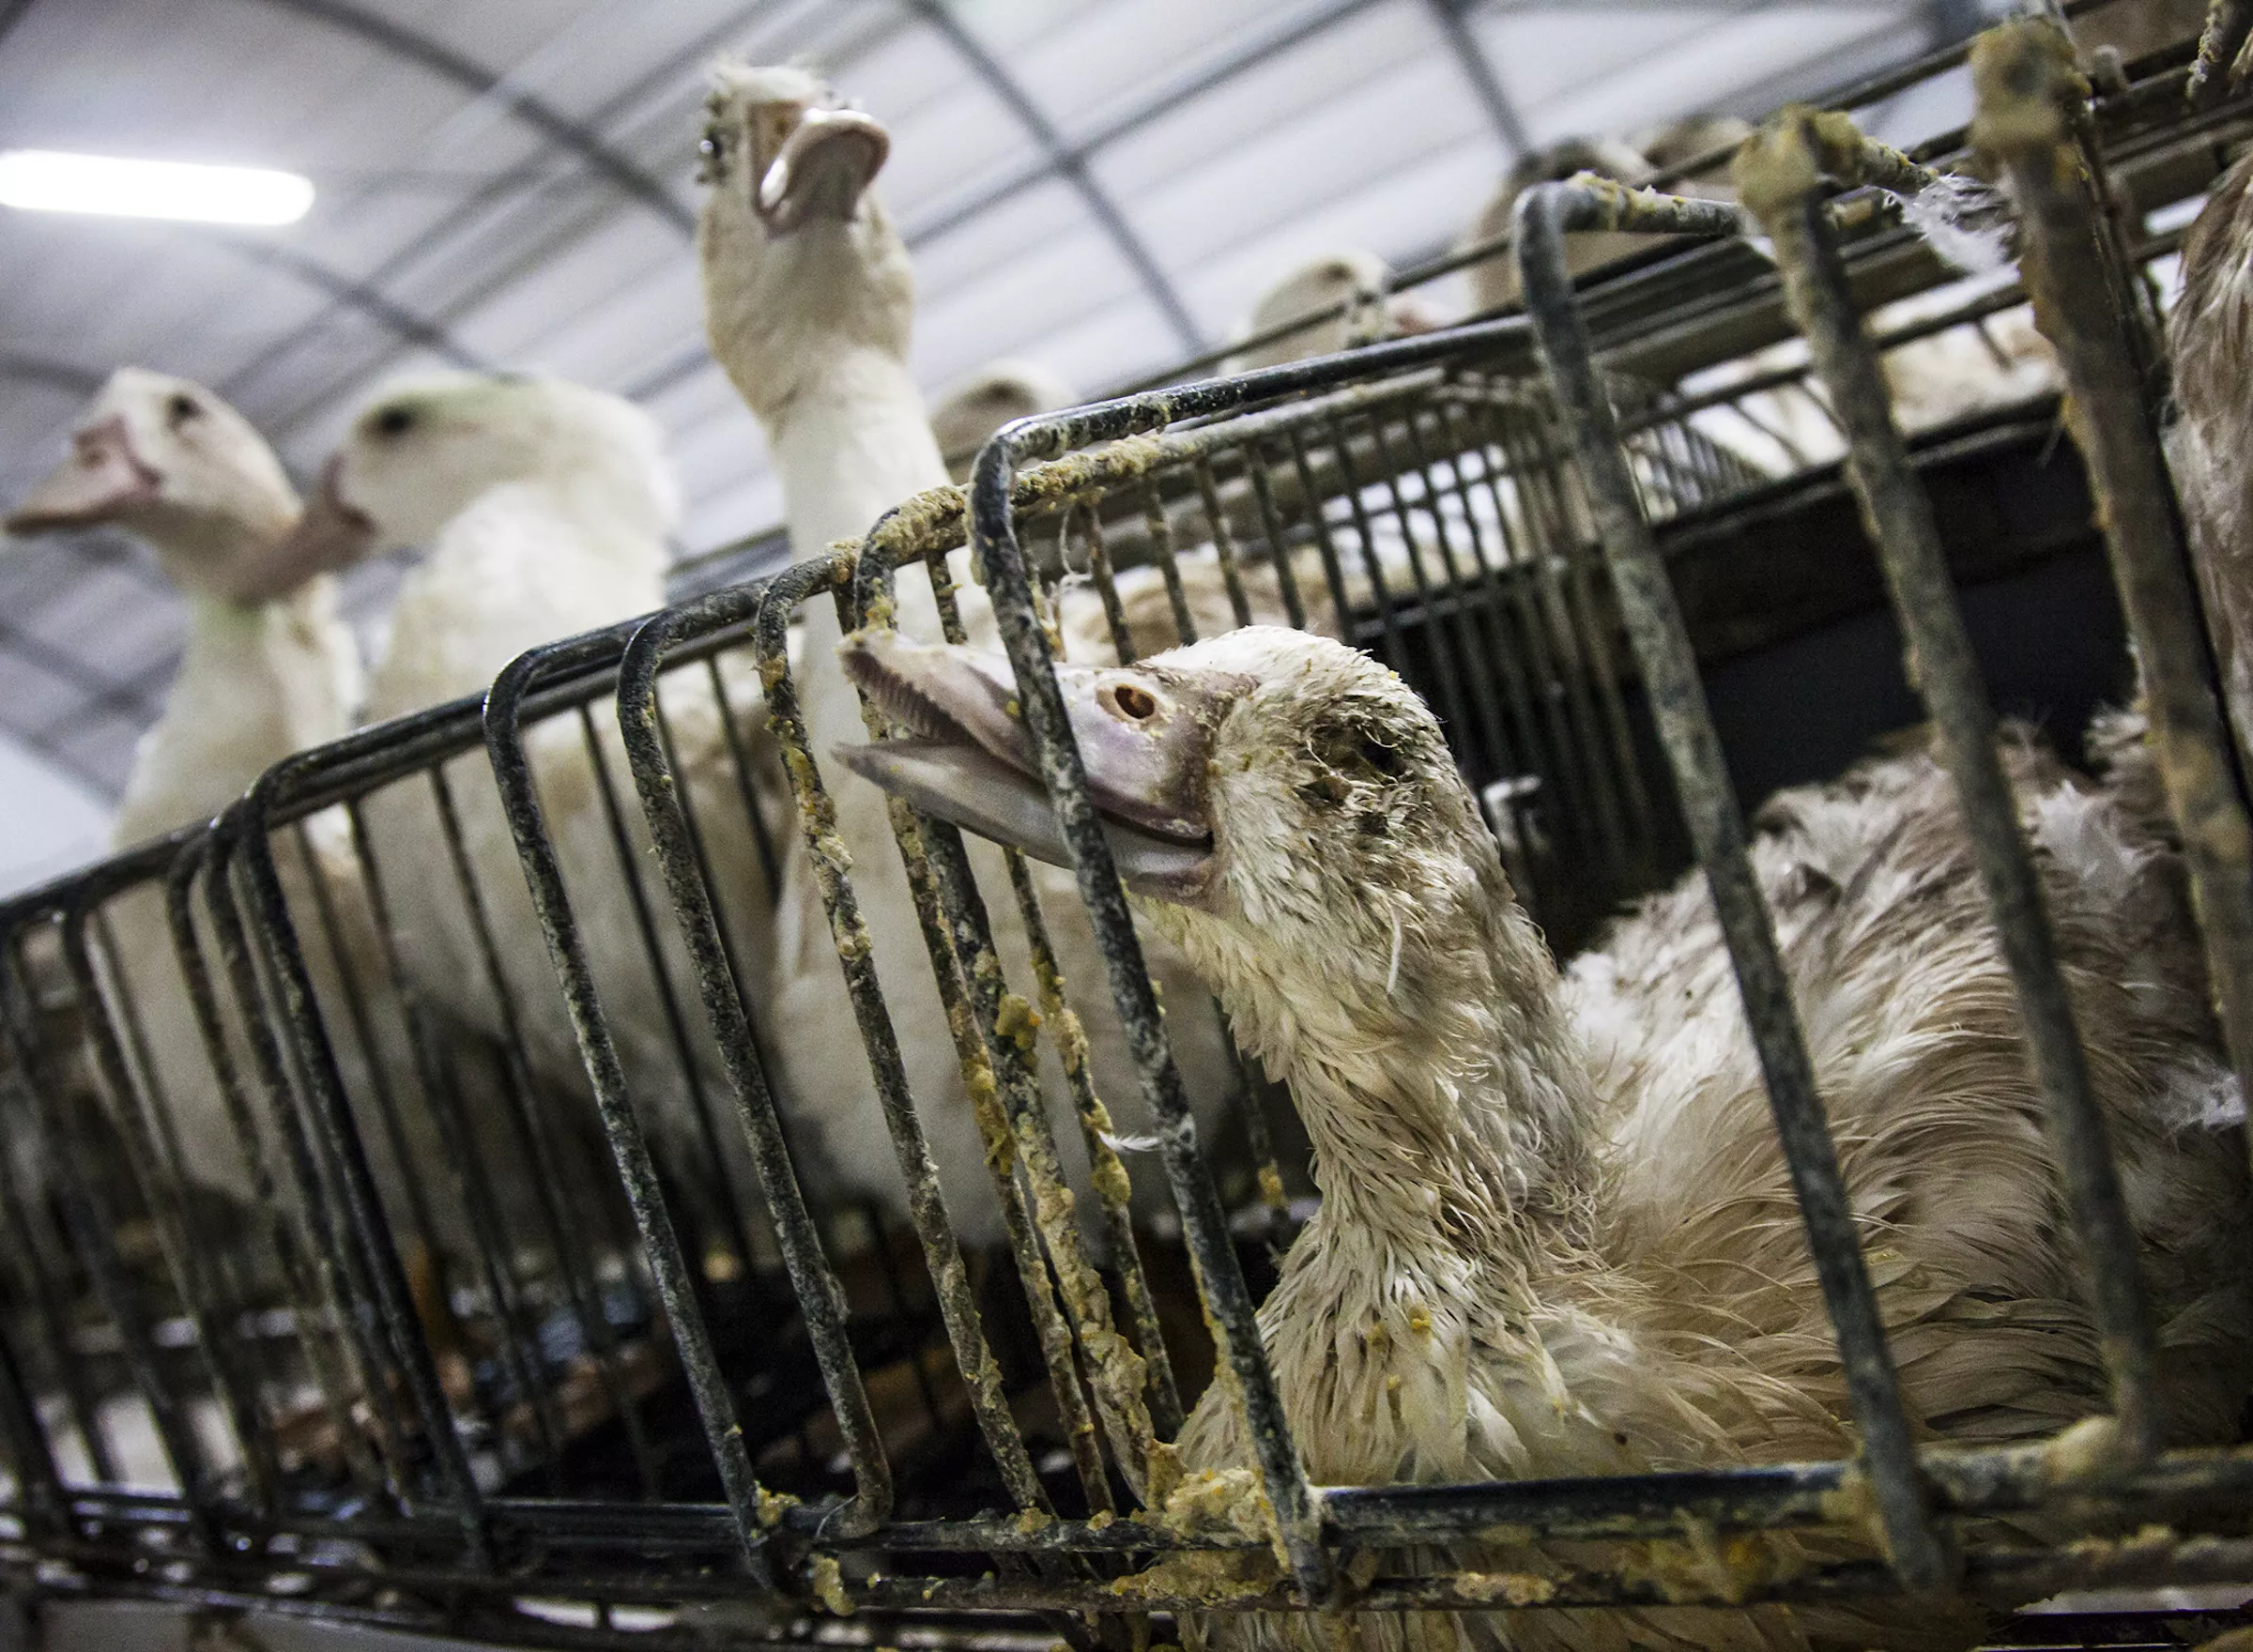 Dead duck in a foie gras farm.